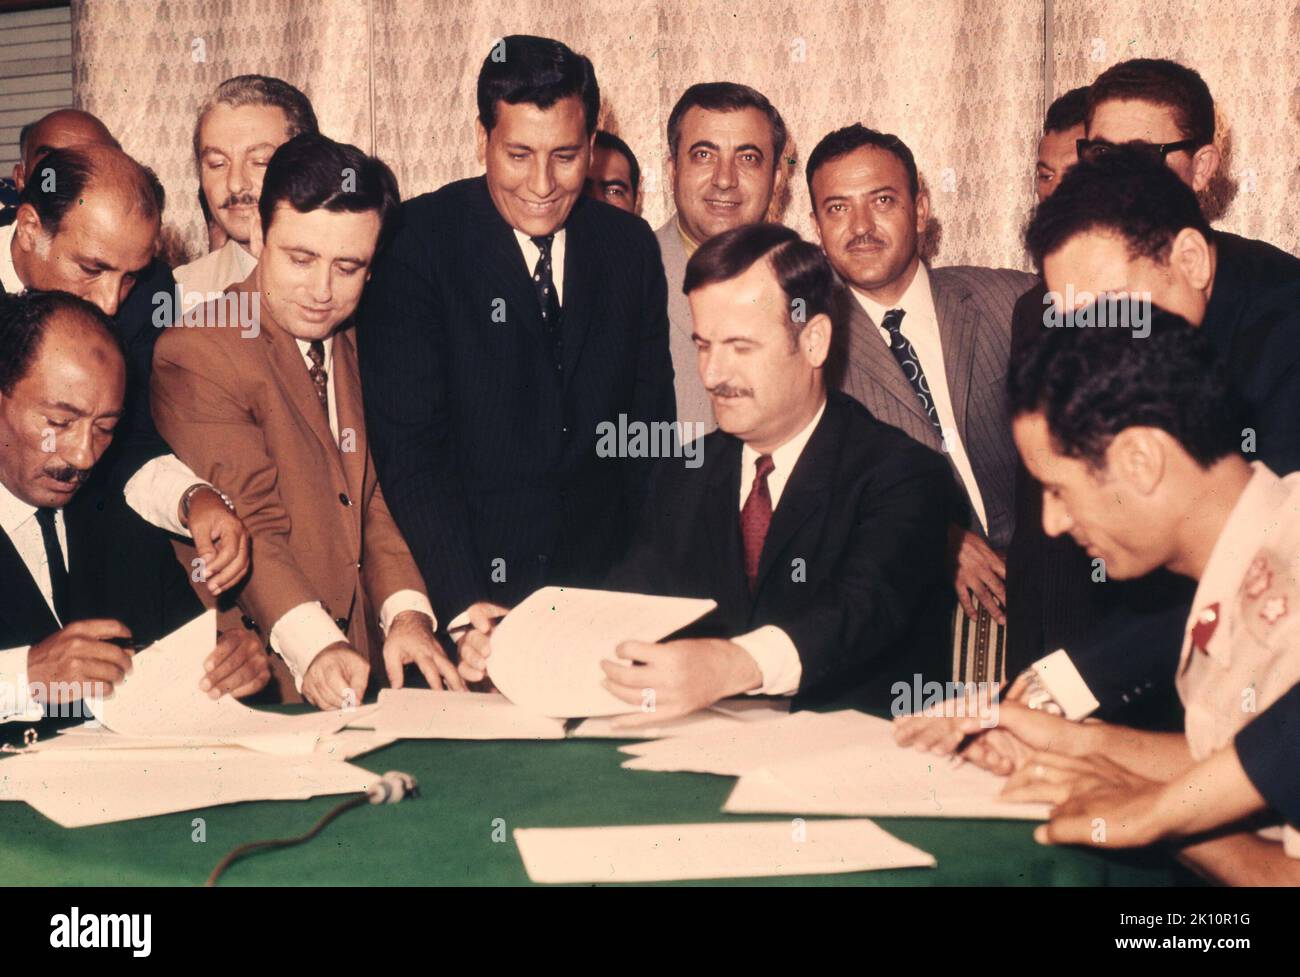 20 août 1971, Damas, Syrie : la Fédération pour l'Union des Républiques arabes a été une tentative infructueuse de Mouammar Kadhafi de fusionner la Libye, l'Égypte et la Syrie afin de créer un État arabe unifié. Anouar Sadat a suggéré lors de la réunion des chefs d'État qu'au lieu d'un État unifié, ils créent une fédération politique qui a permis à l'Égypte, à la Syrie et au Soudan d'obtenir d'importantes subventions de l'argent du pétrole libyen. Une charte non officielle de fusion, n'a jamais été mise en œuvre alors que les relations se sont rompues l'année suivante. De gauche à droite, les chefs d'État sont le Président DE LA République arabe unie, M. ANWAR SADAT Banque D'Images